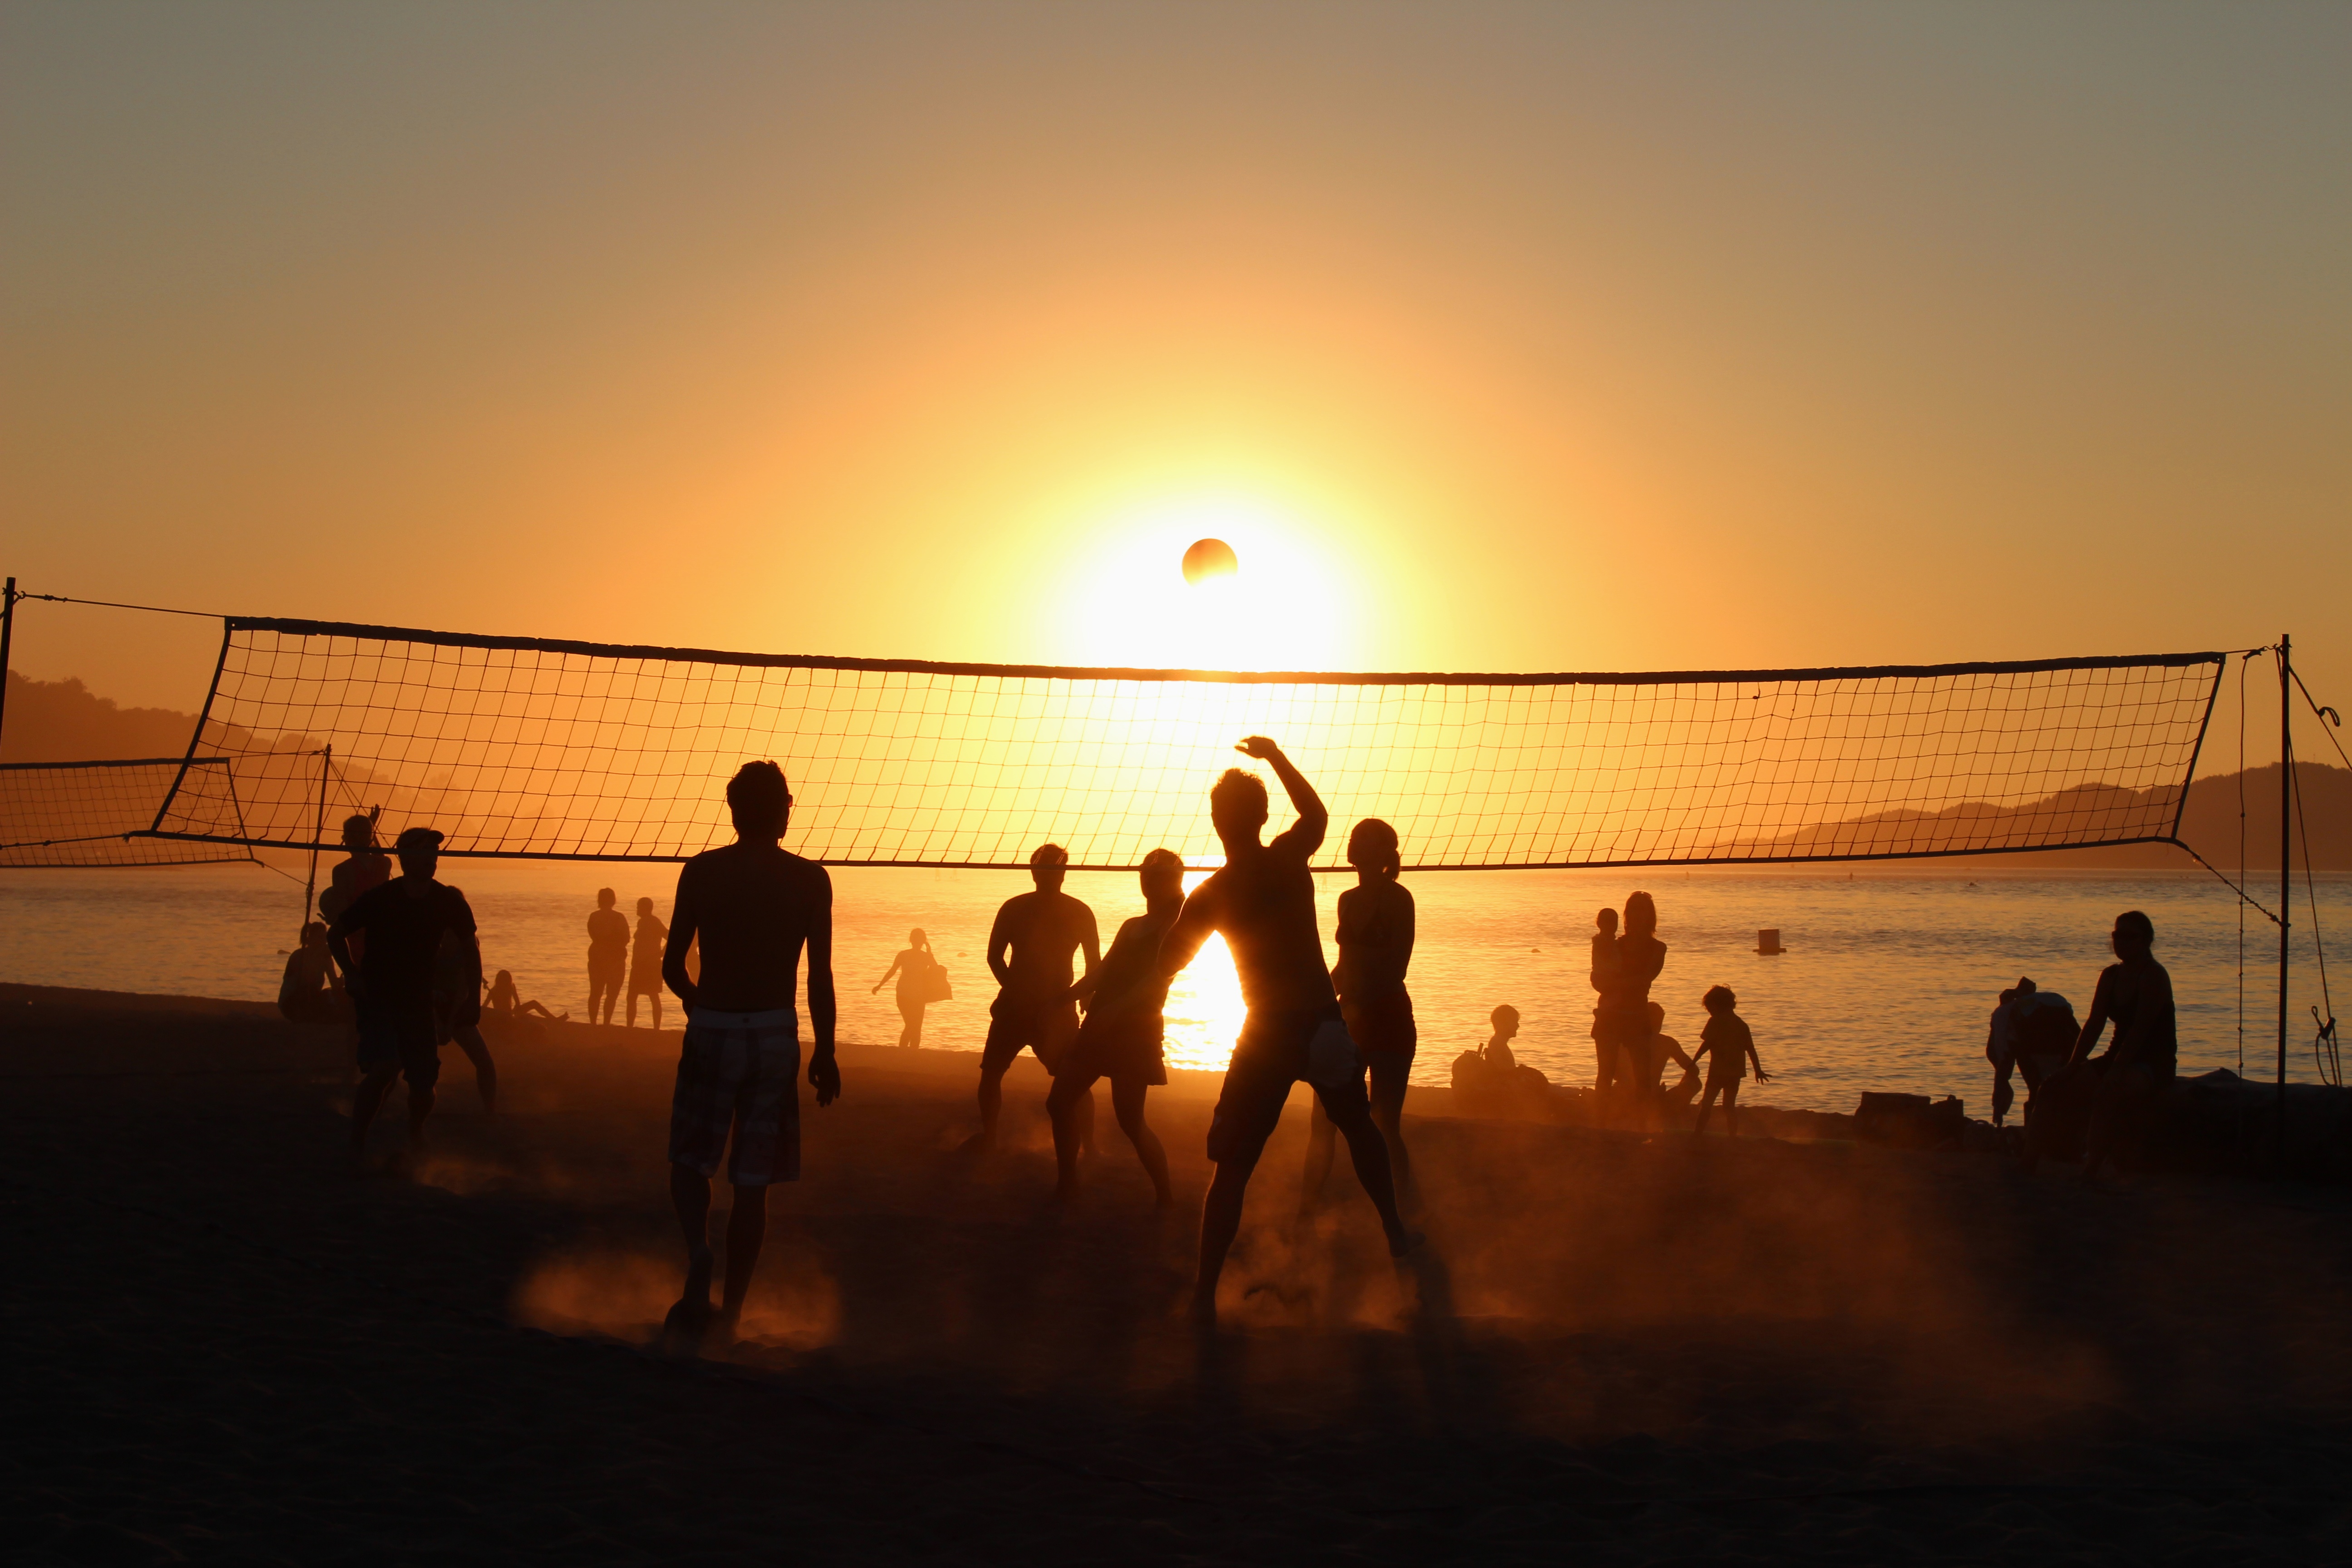 Best - Volleyball Beach , HD Wallpaper & Backgrounds